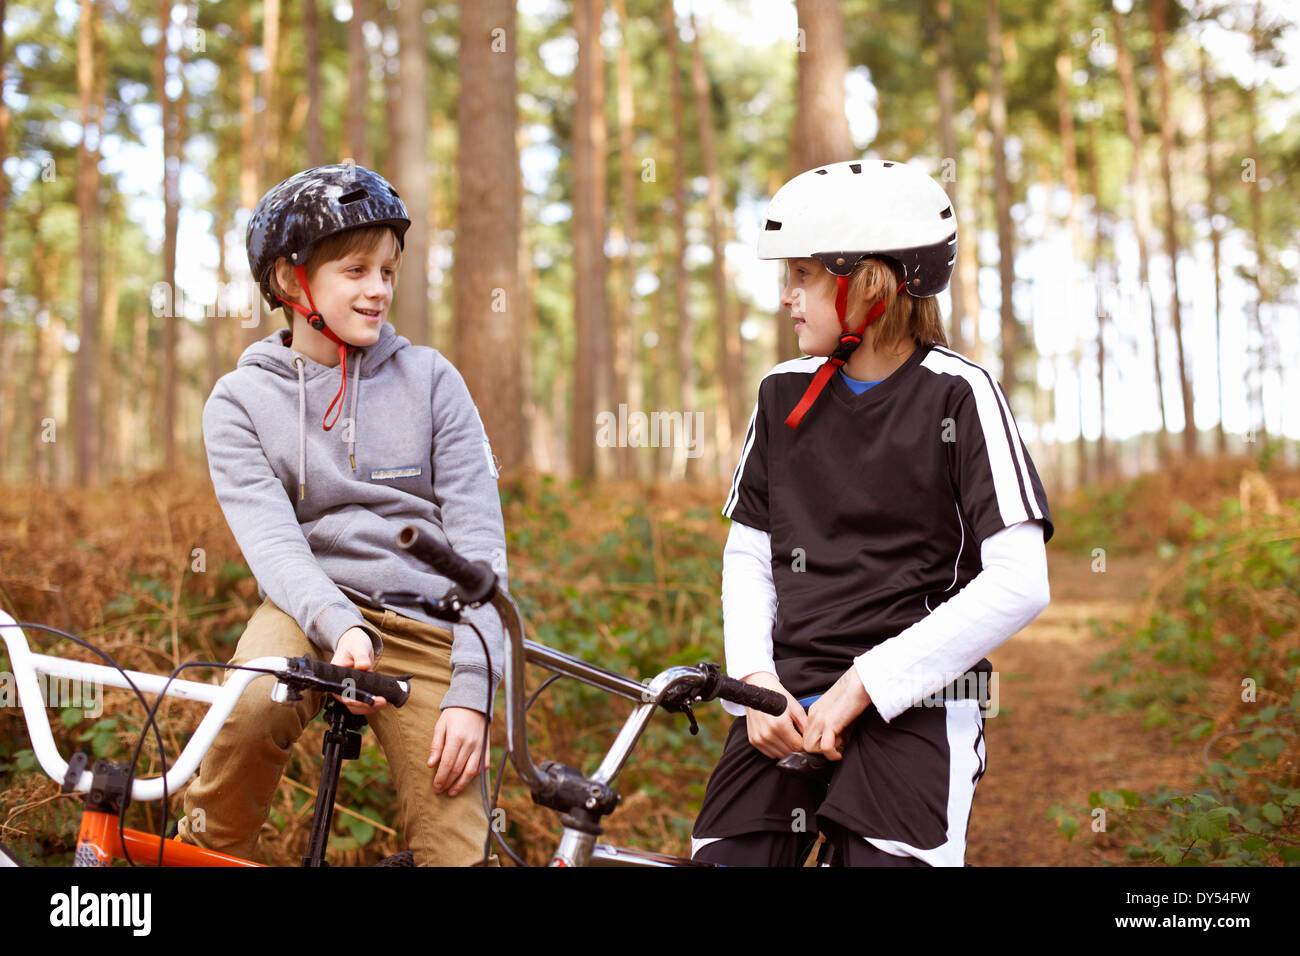 Les frères jumeaux sur vélos BMX chatting in forest Banque D'Images